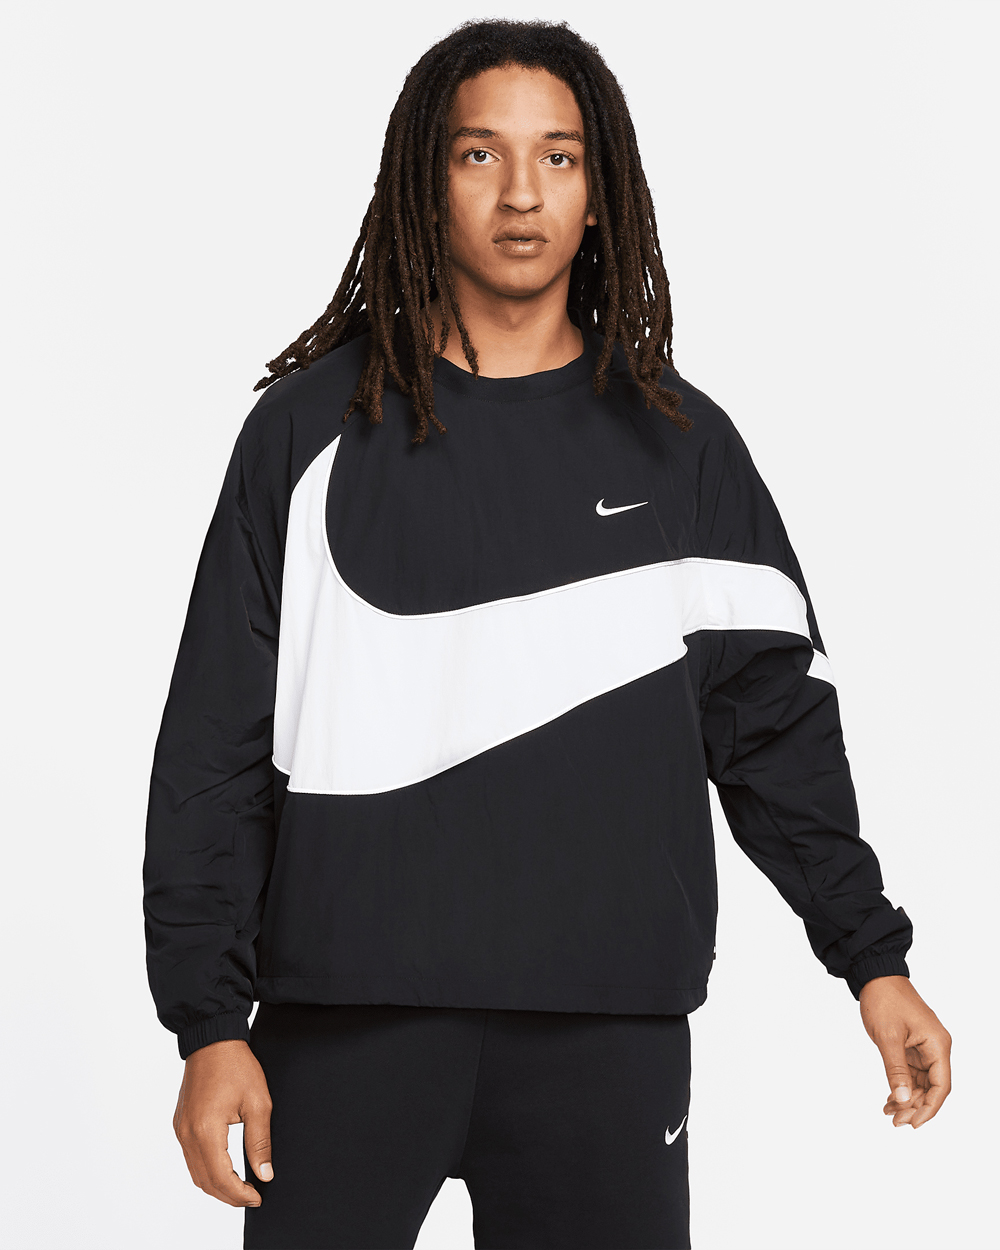 Nike-Sportswear-Swoosh-Woven-Jacket-Black-White